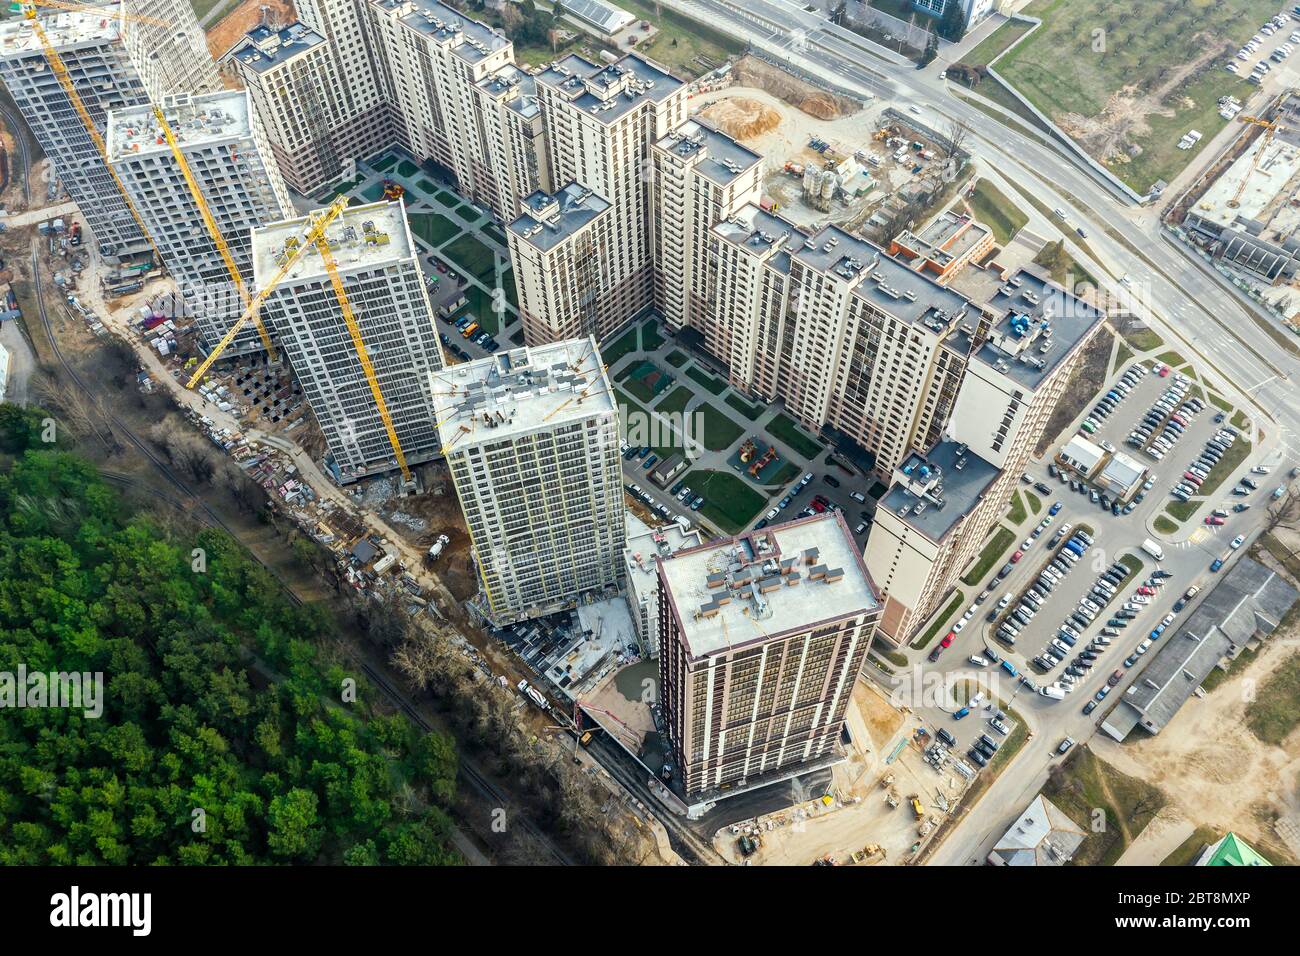 costruzione di un nuovo quartiere residenziale vicino al parco cittadino. gru e altre attrezzature industriali in cantiere. foto lookin drone aereo Foto Stock